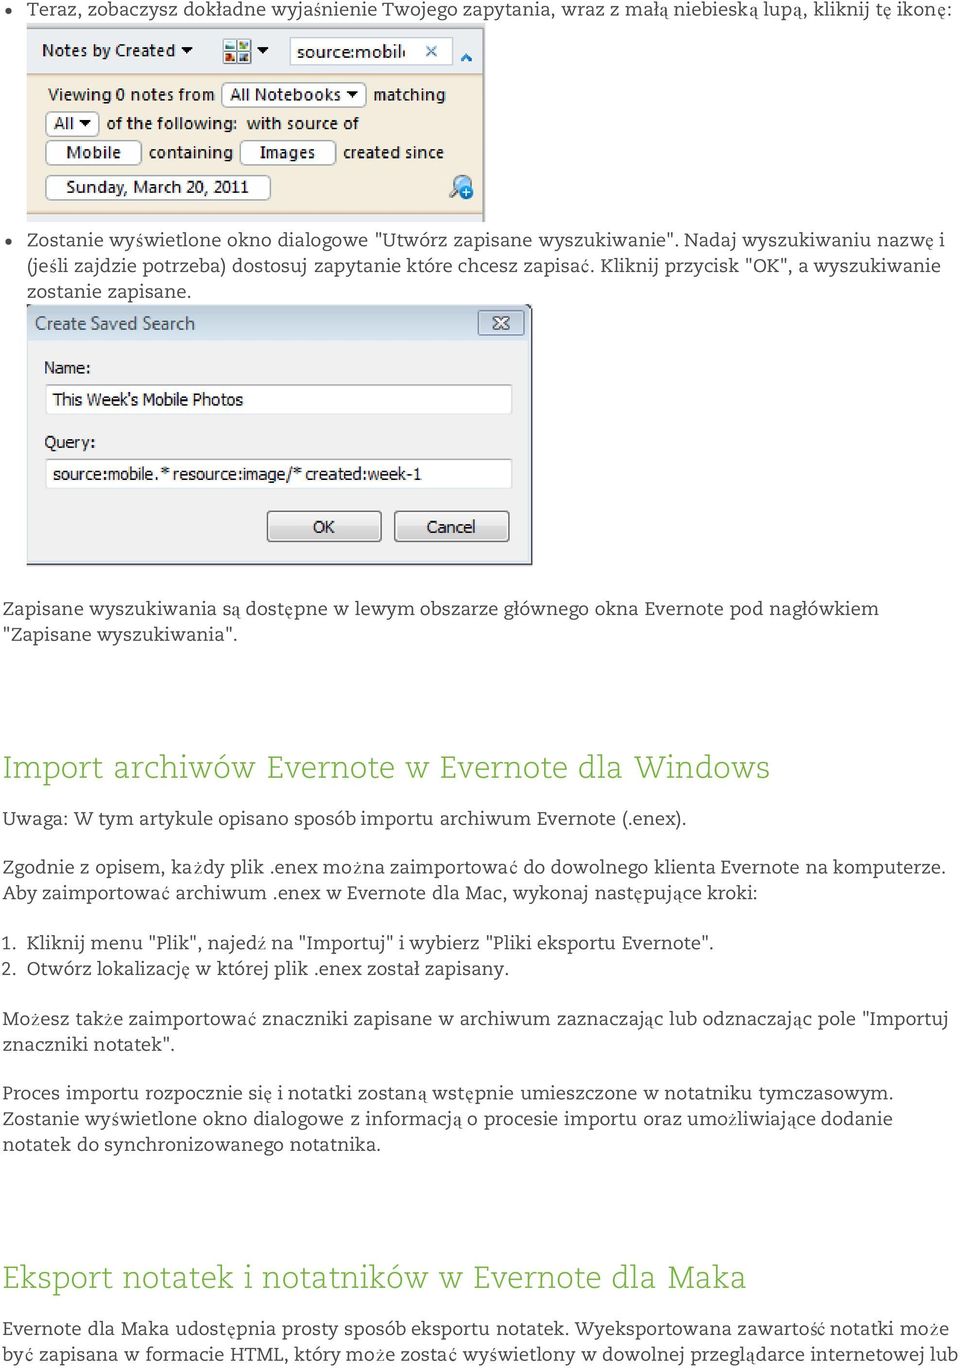 Zapisane wyszukiwania są dostępne w lewym obszarze głównego okna Evernote pod nagłówkiem "Zapisane wyszukiwania".